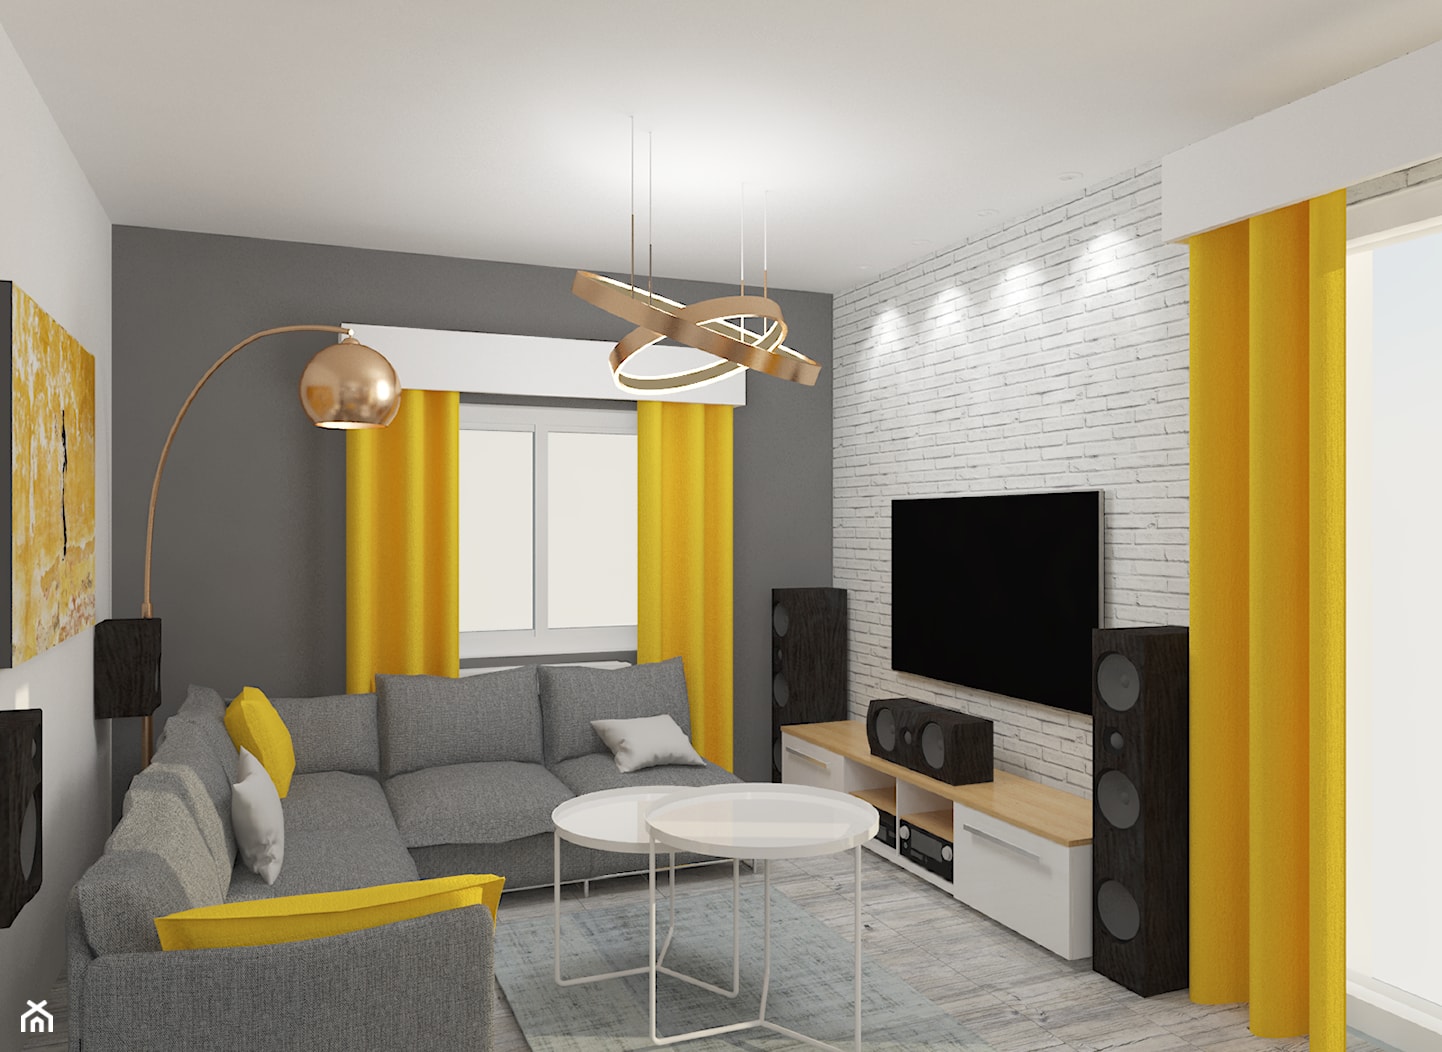 Jasny salon z mocnymi żółtymi dodatkami - zdjęcie od Studio prosta forma - Homebook